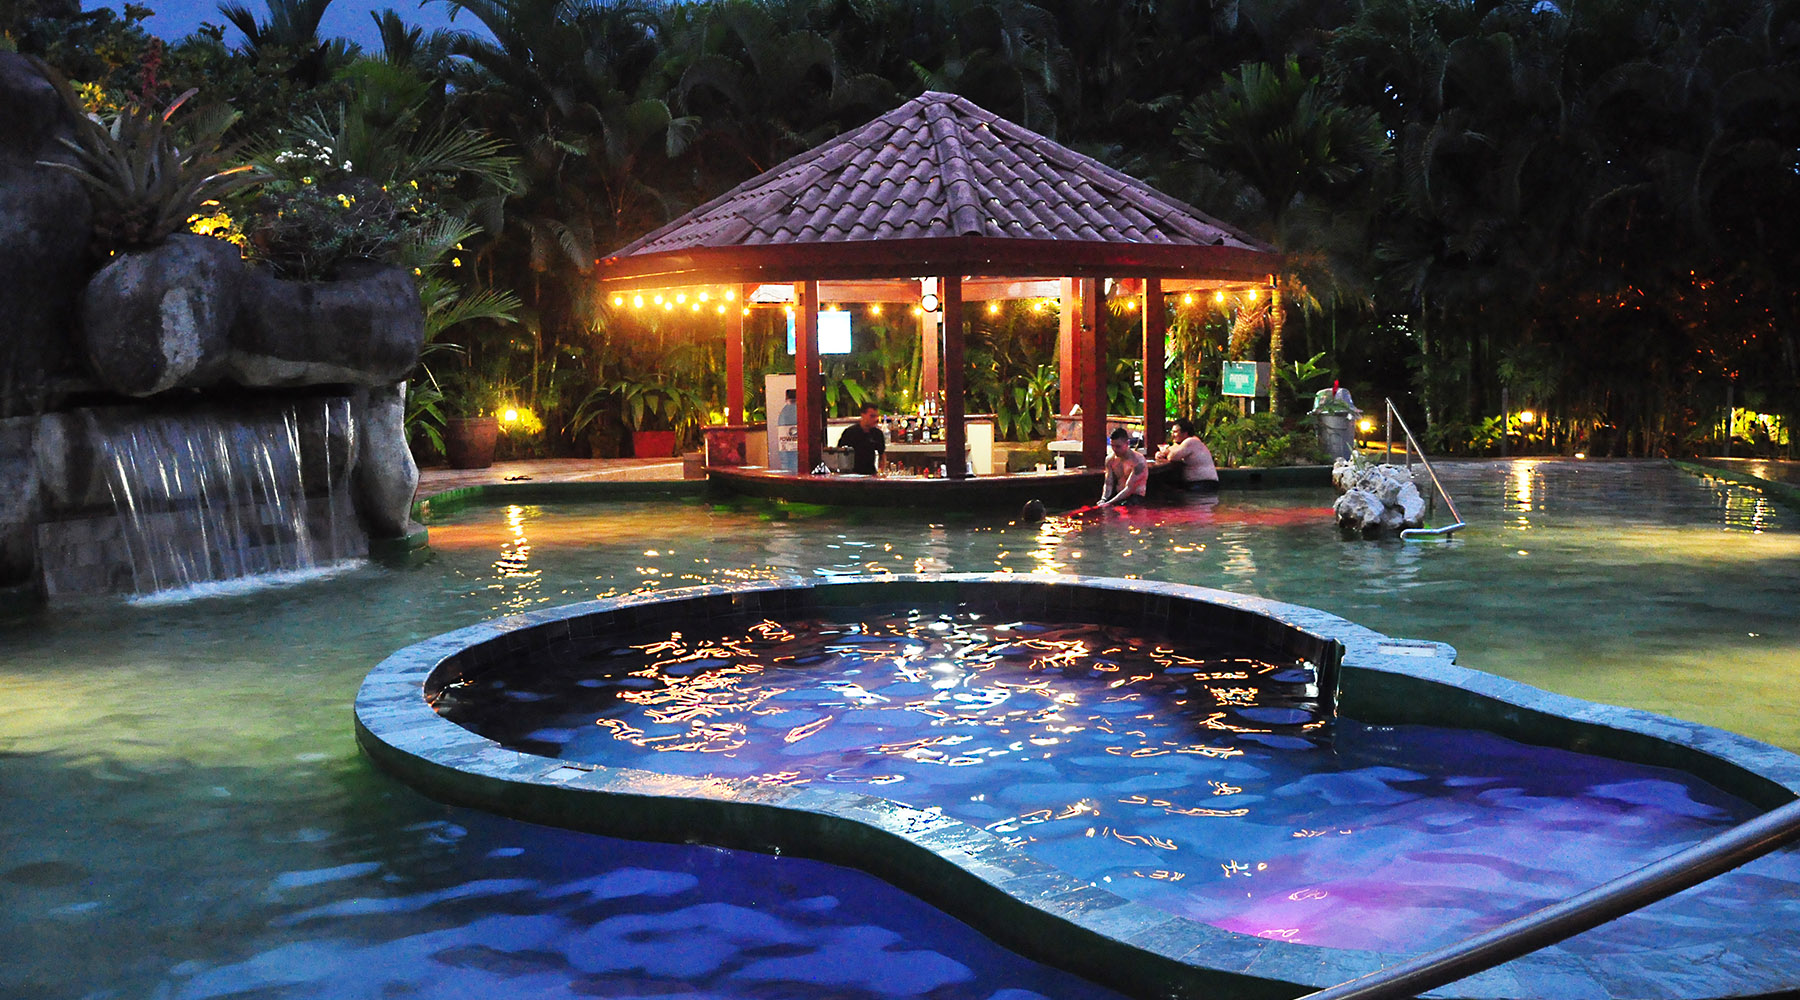 Pangea hot springs pool at night